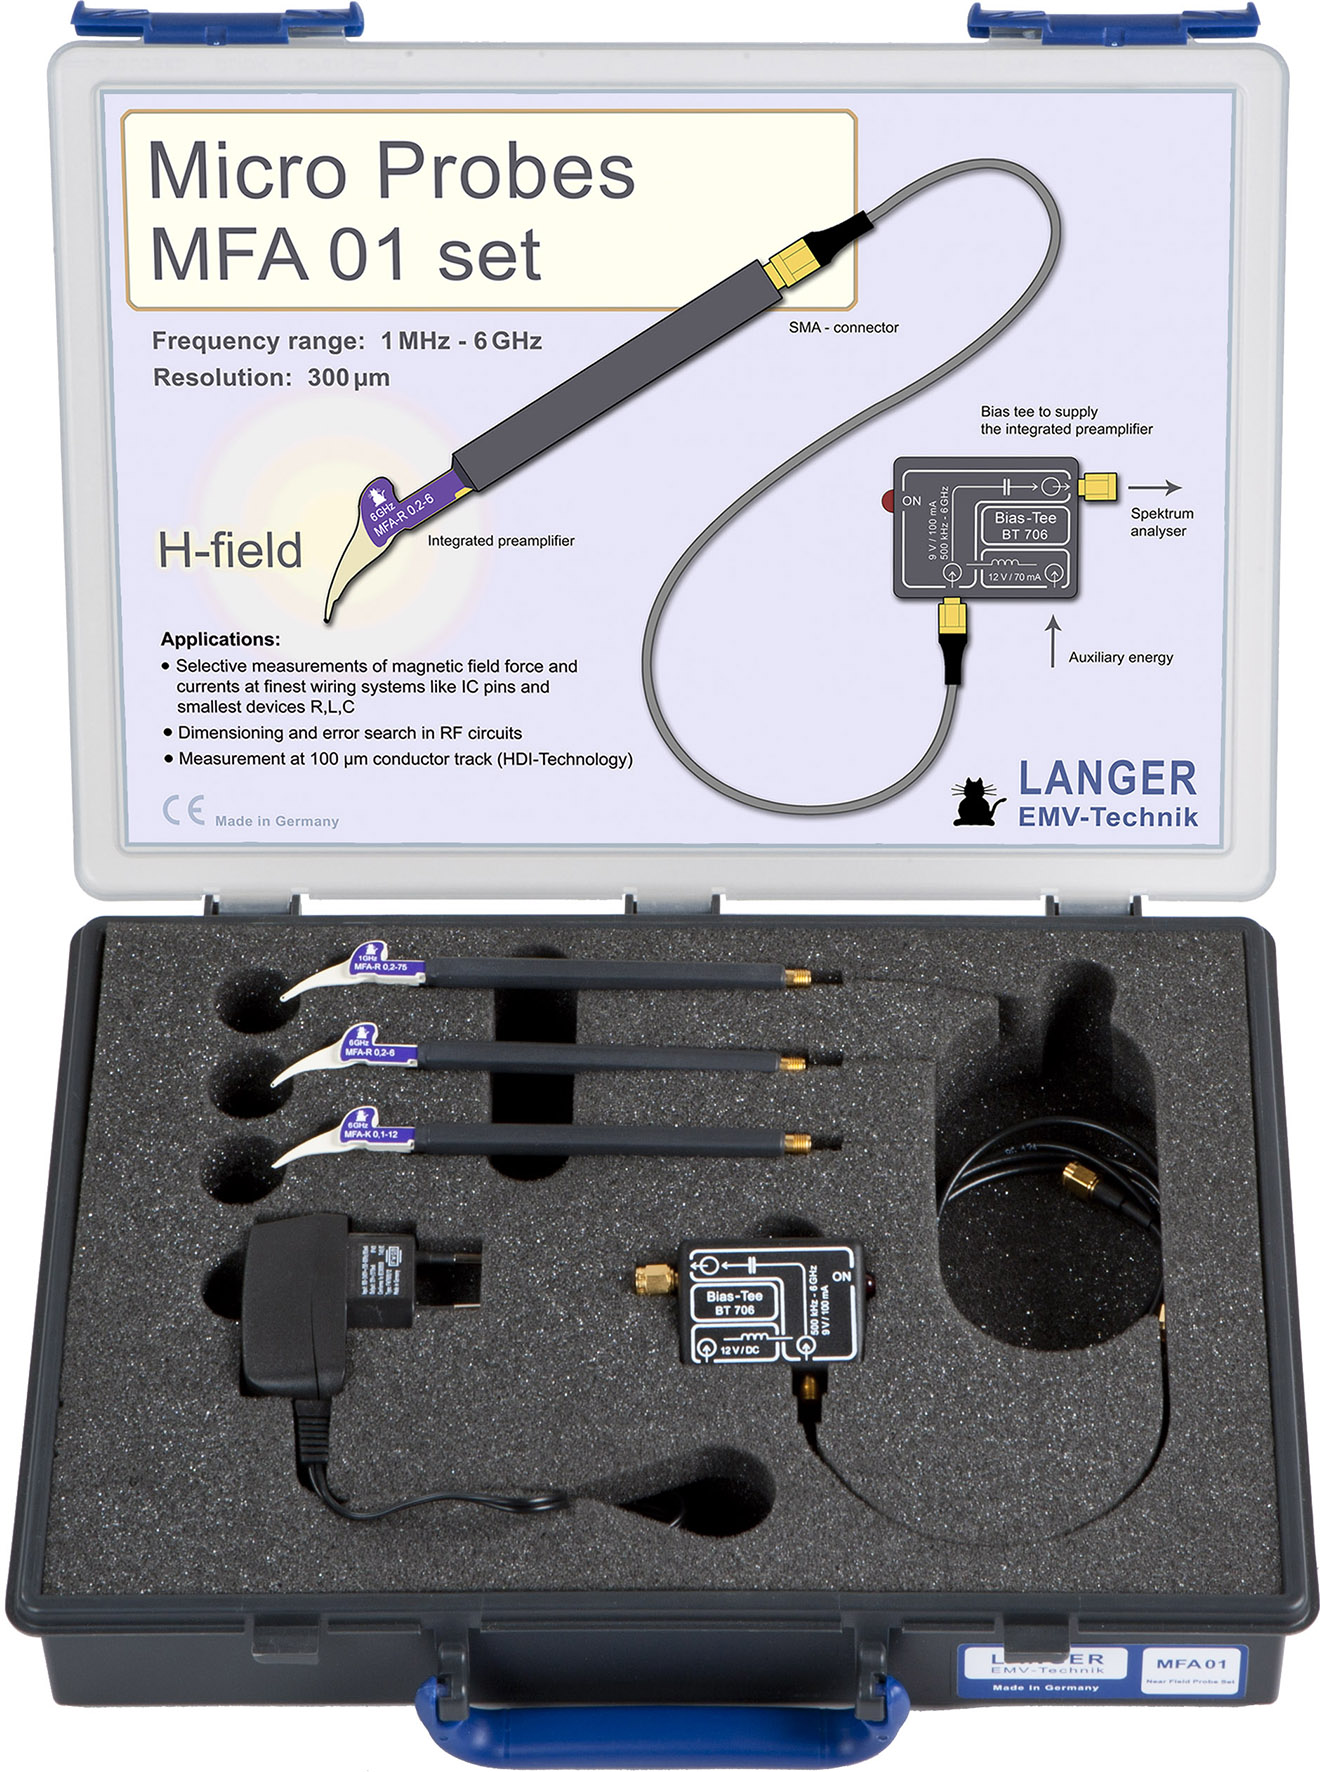 MFA 01 set, 微型探头组（1MHz-6GHz）